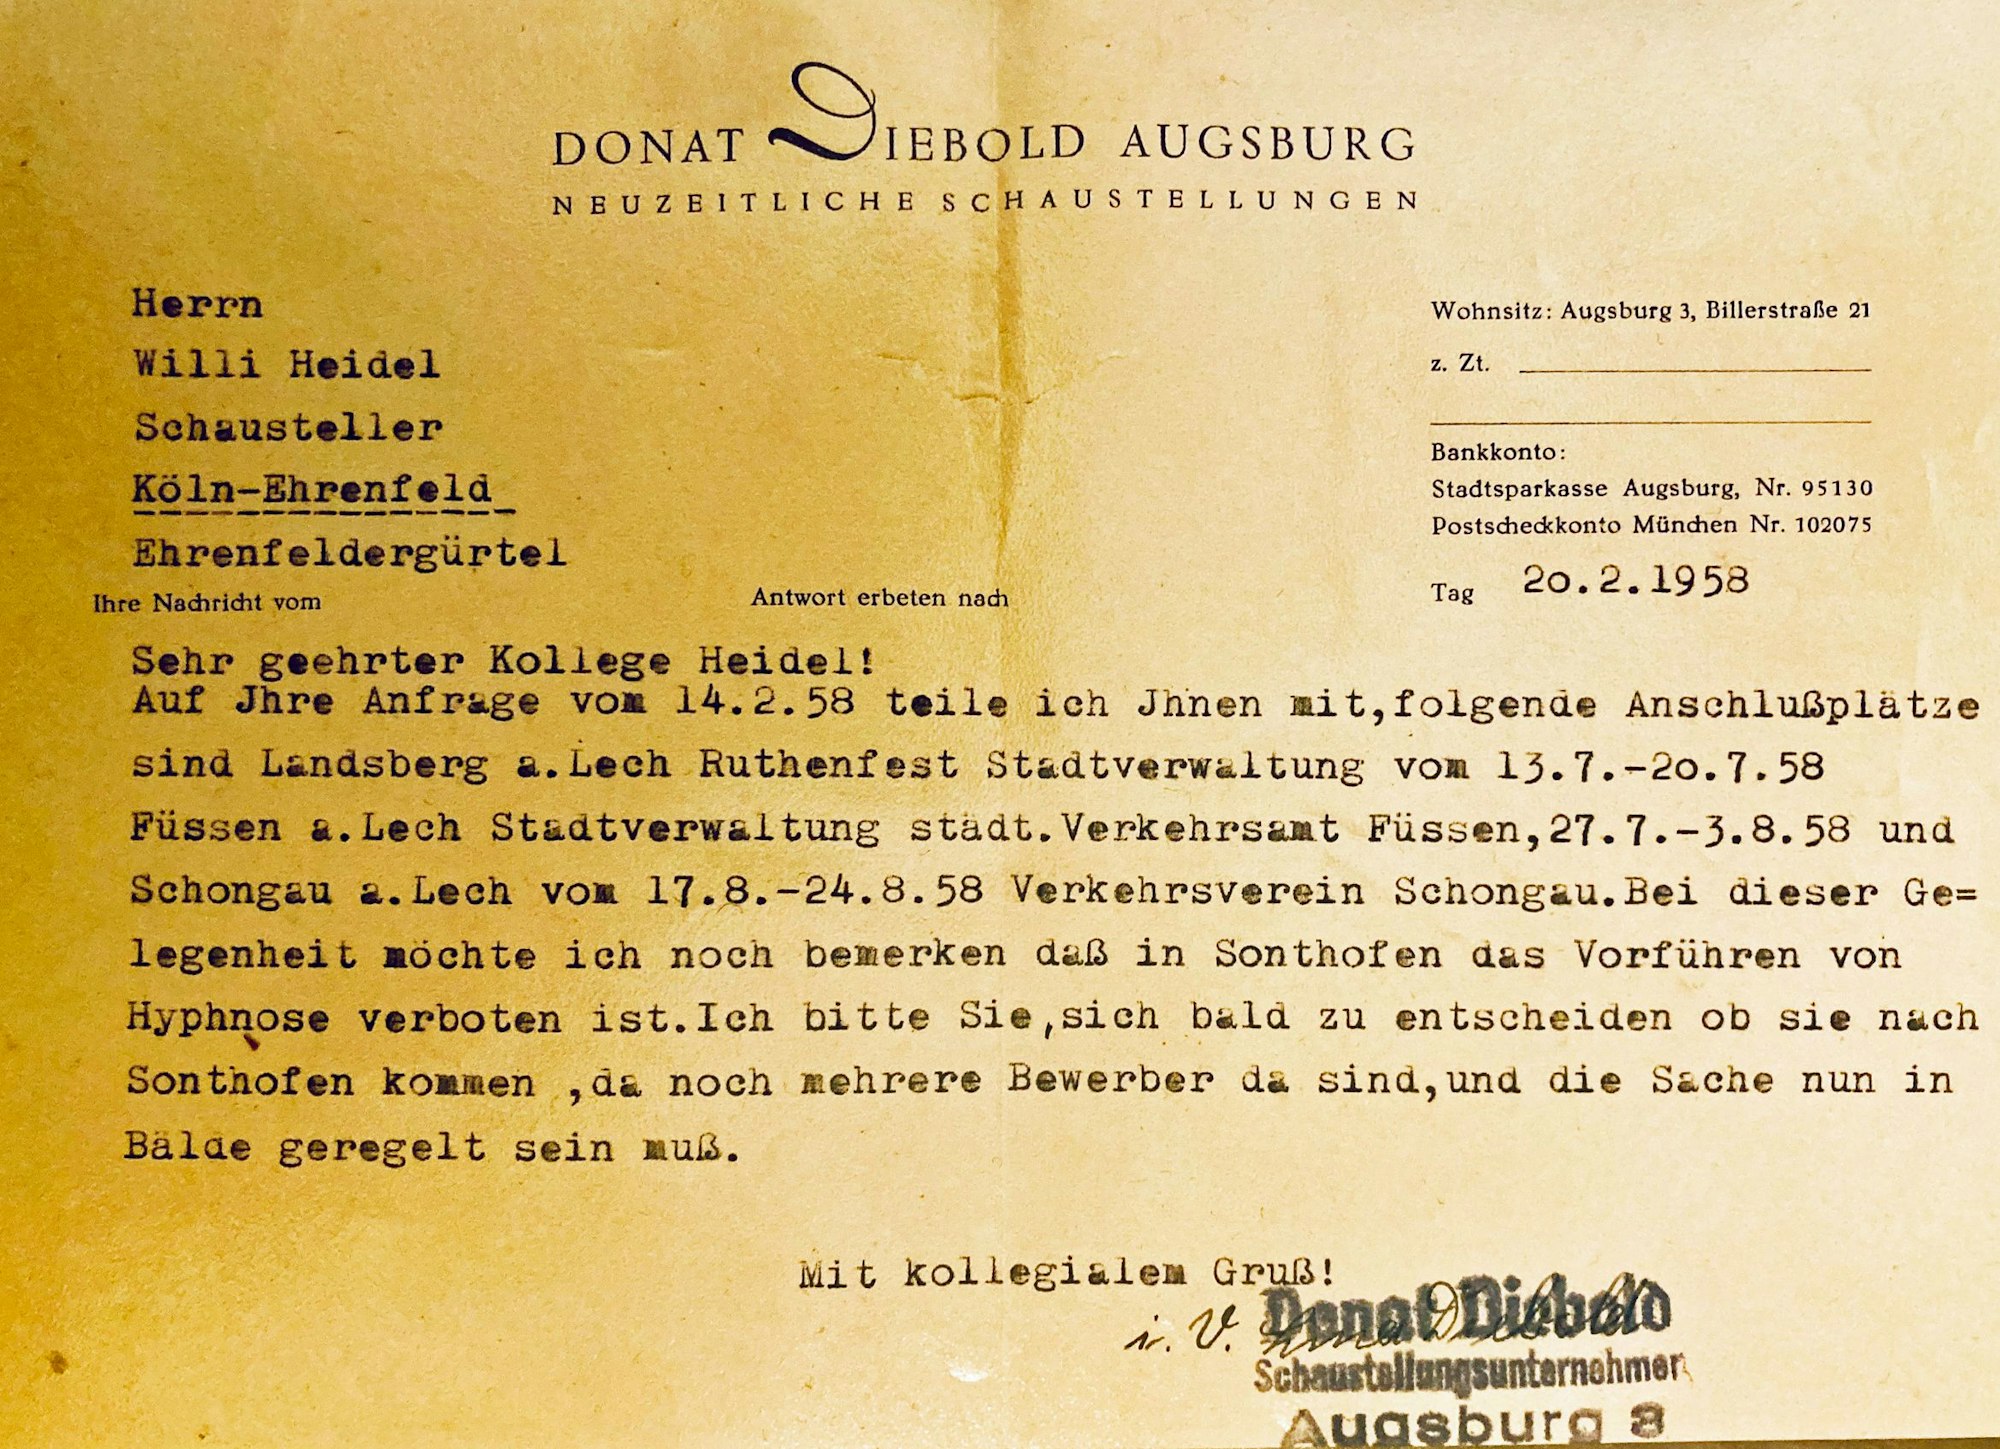 Der Brief enthält Informationen zu Jahrmärkten in Bayern im Jahr 1958.